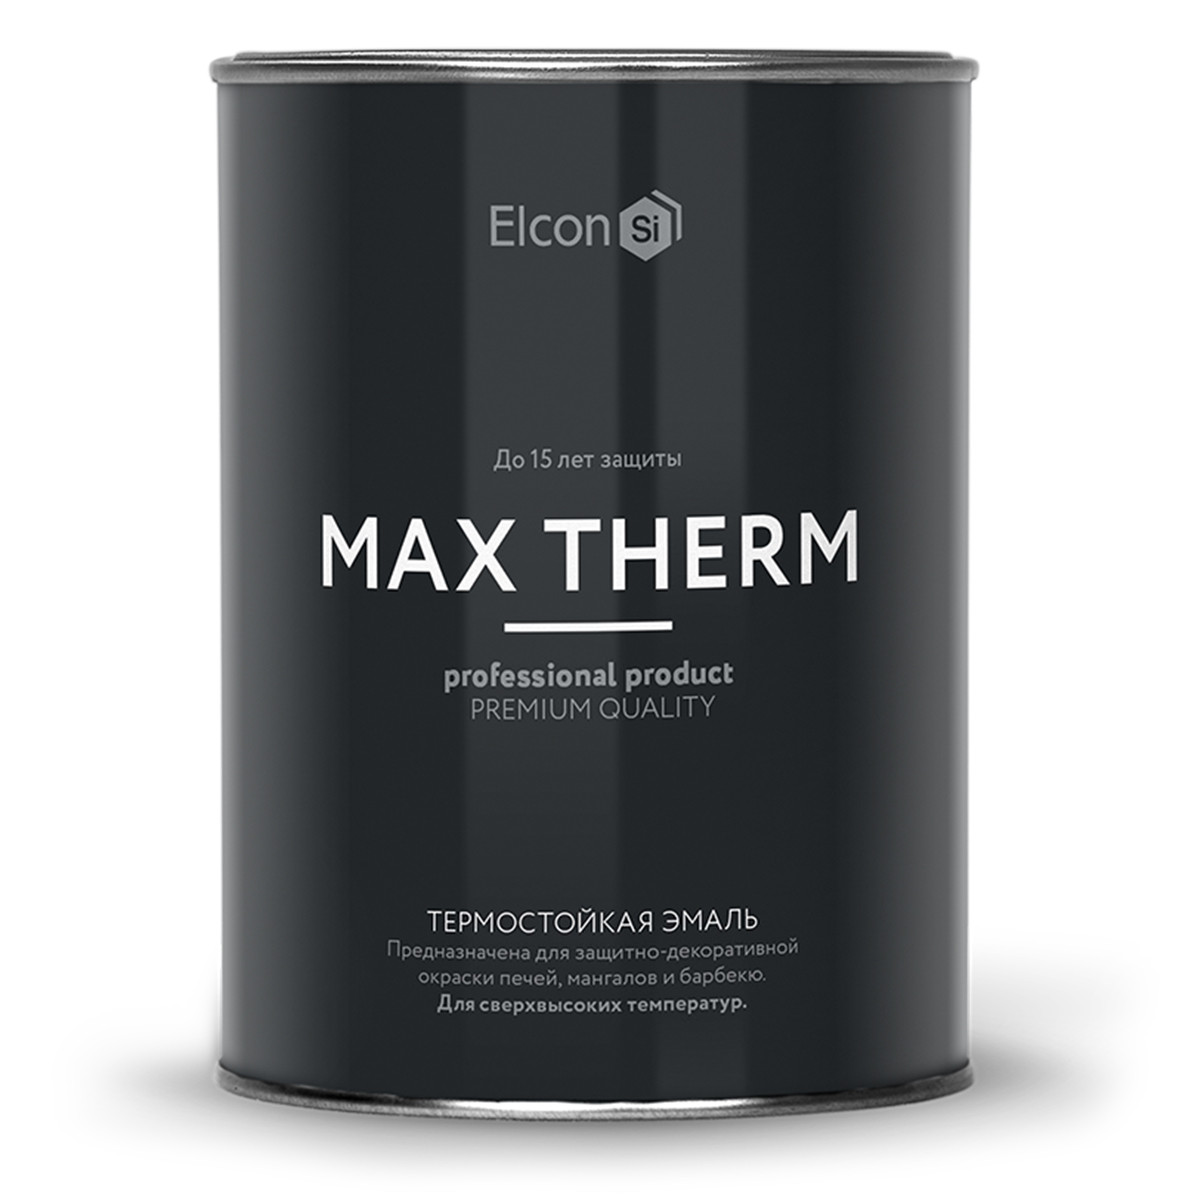 Термостойкая эмаль Elcon Max Therm  (термостойкость до 500°С)